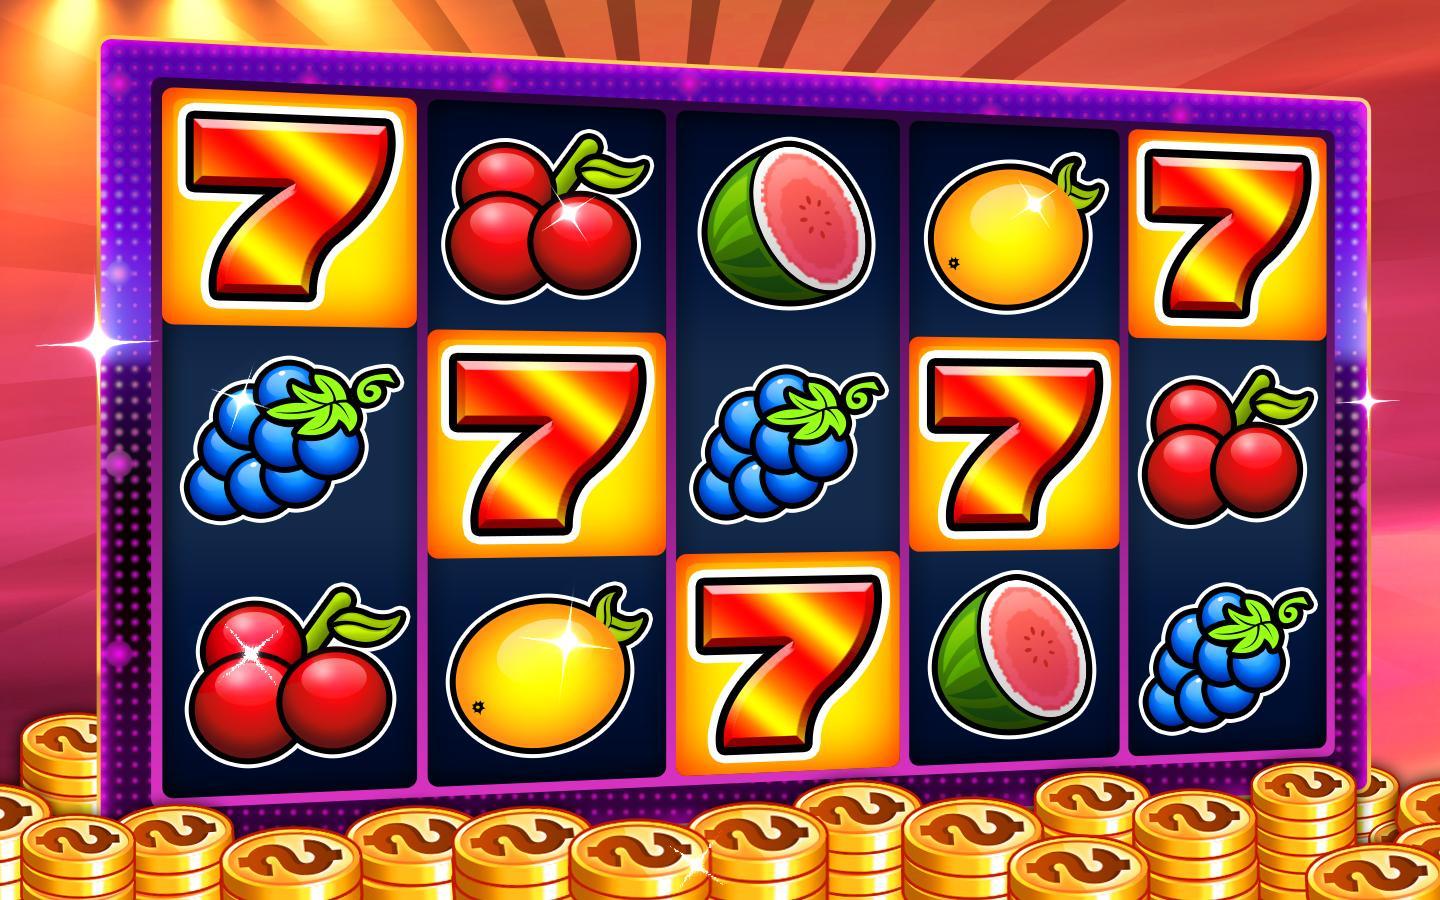 Slot machines - Casino slots 6.2 Screenshot 4